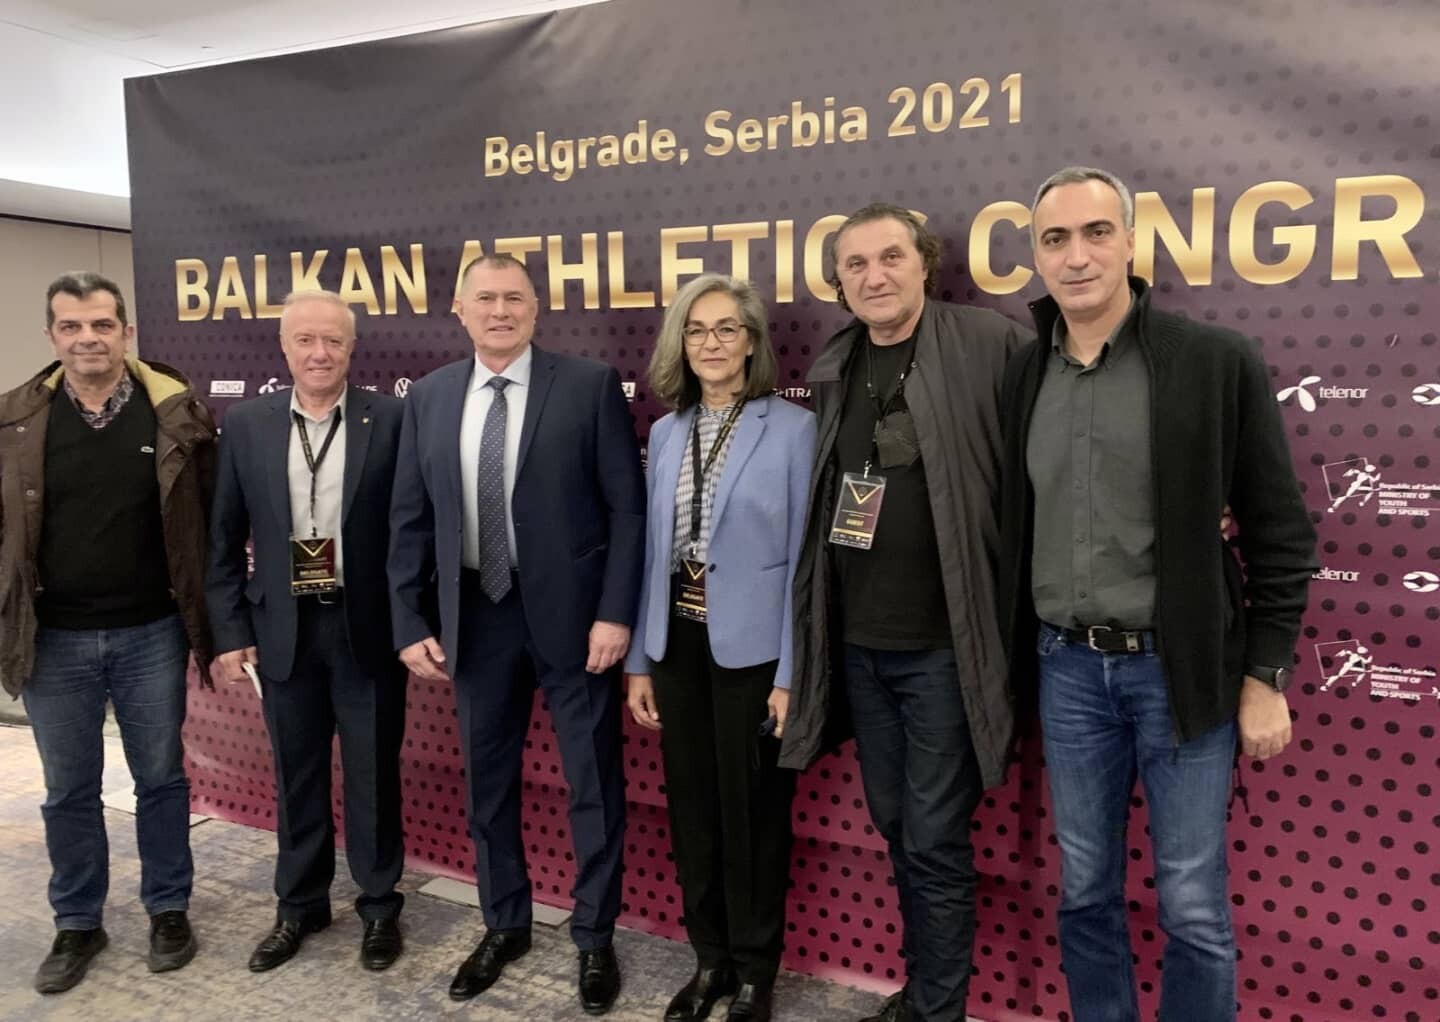 Ο πρόεδρος της ΕΑ Ντόμπτι Καραμαρίνοφ με την πρόεδρο του ΣΕΓΑΣ, Σοφία Σακοράφα και τα υπόλοιπα μέλη της αποστολής στο Βελιγράδι